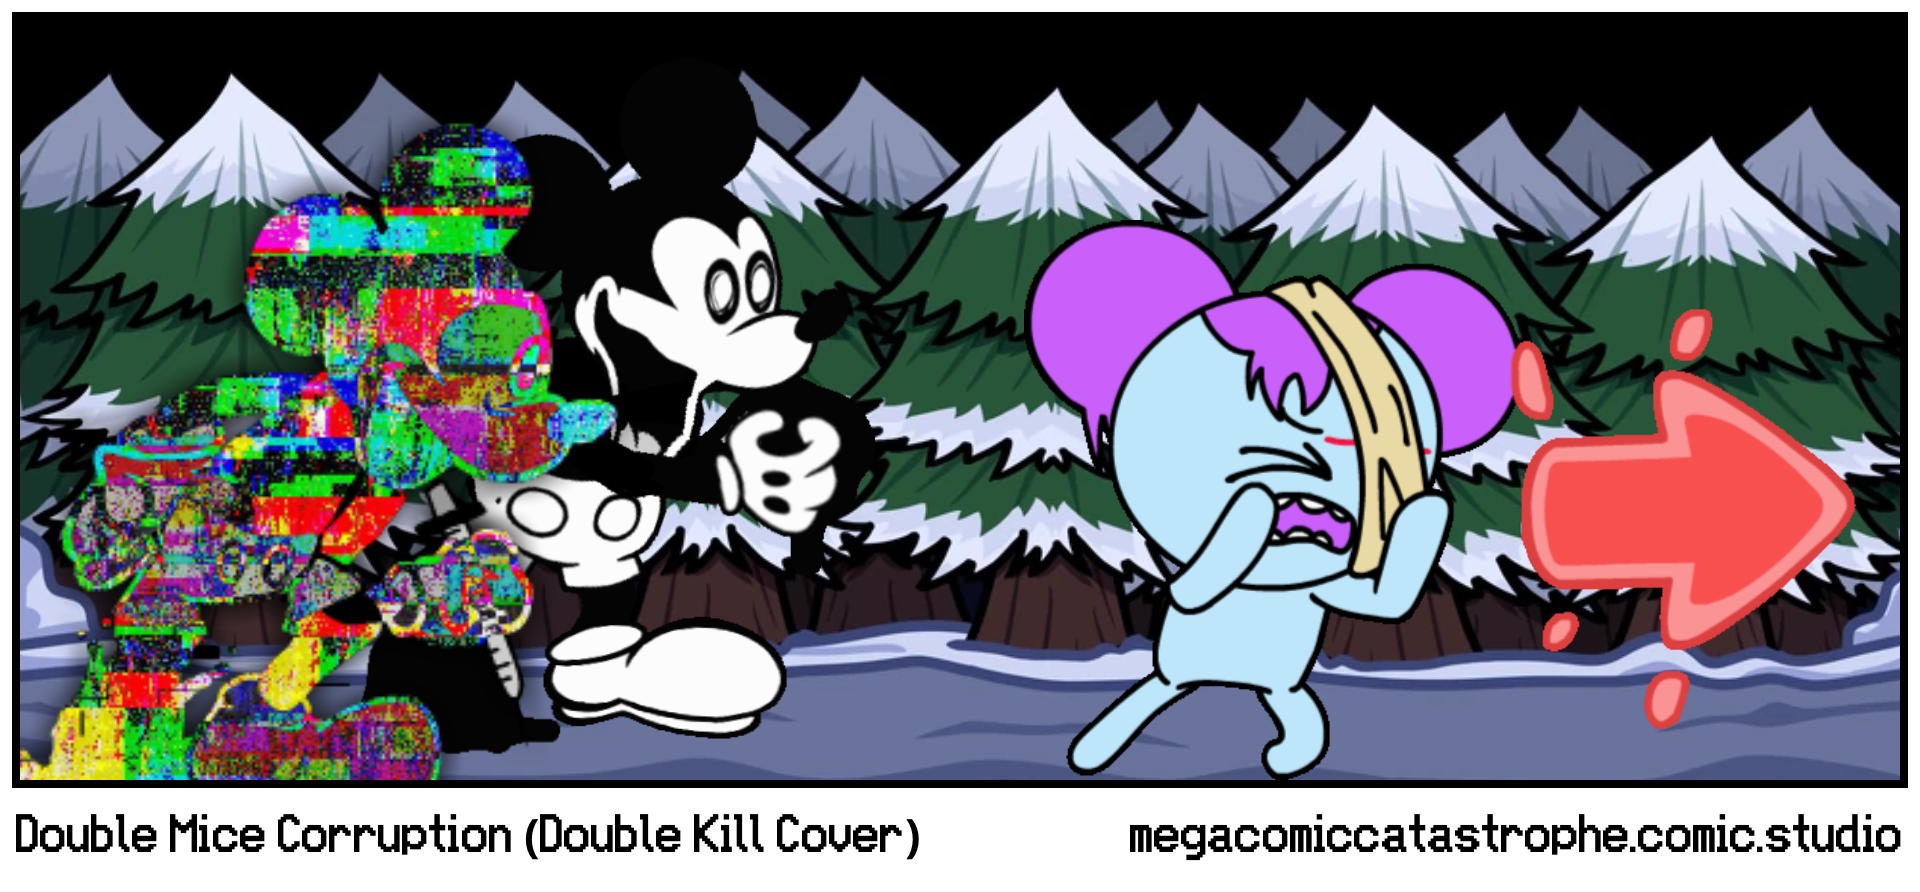 Double Mice Corruption (Double Kill Cover)